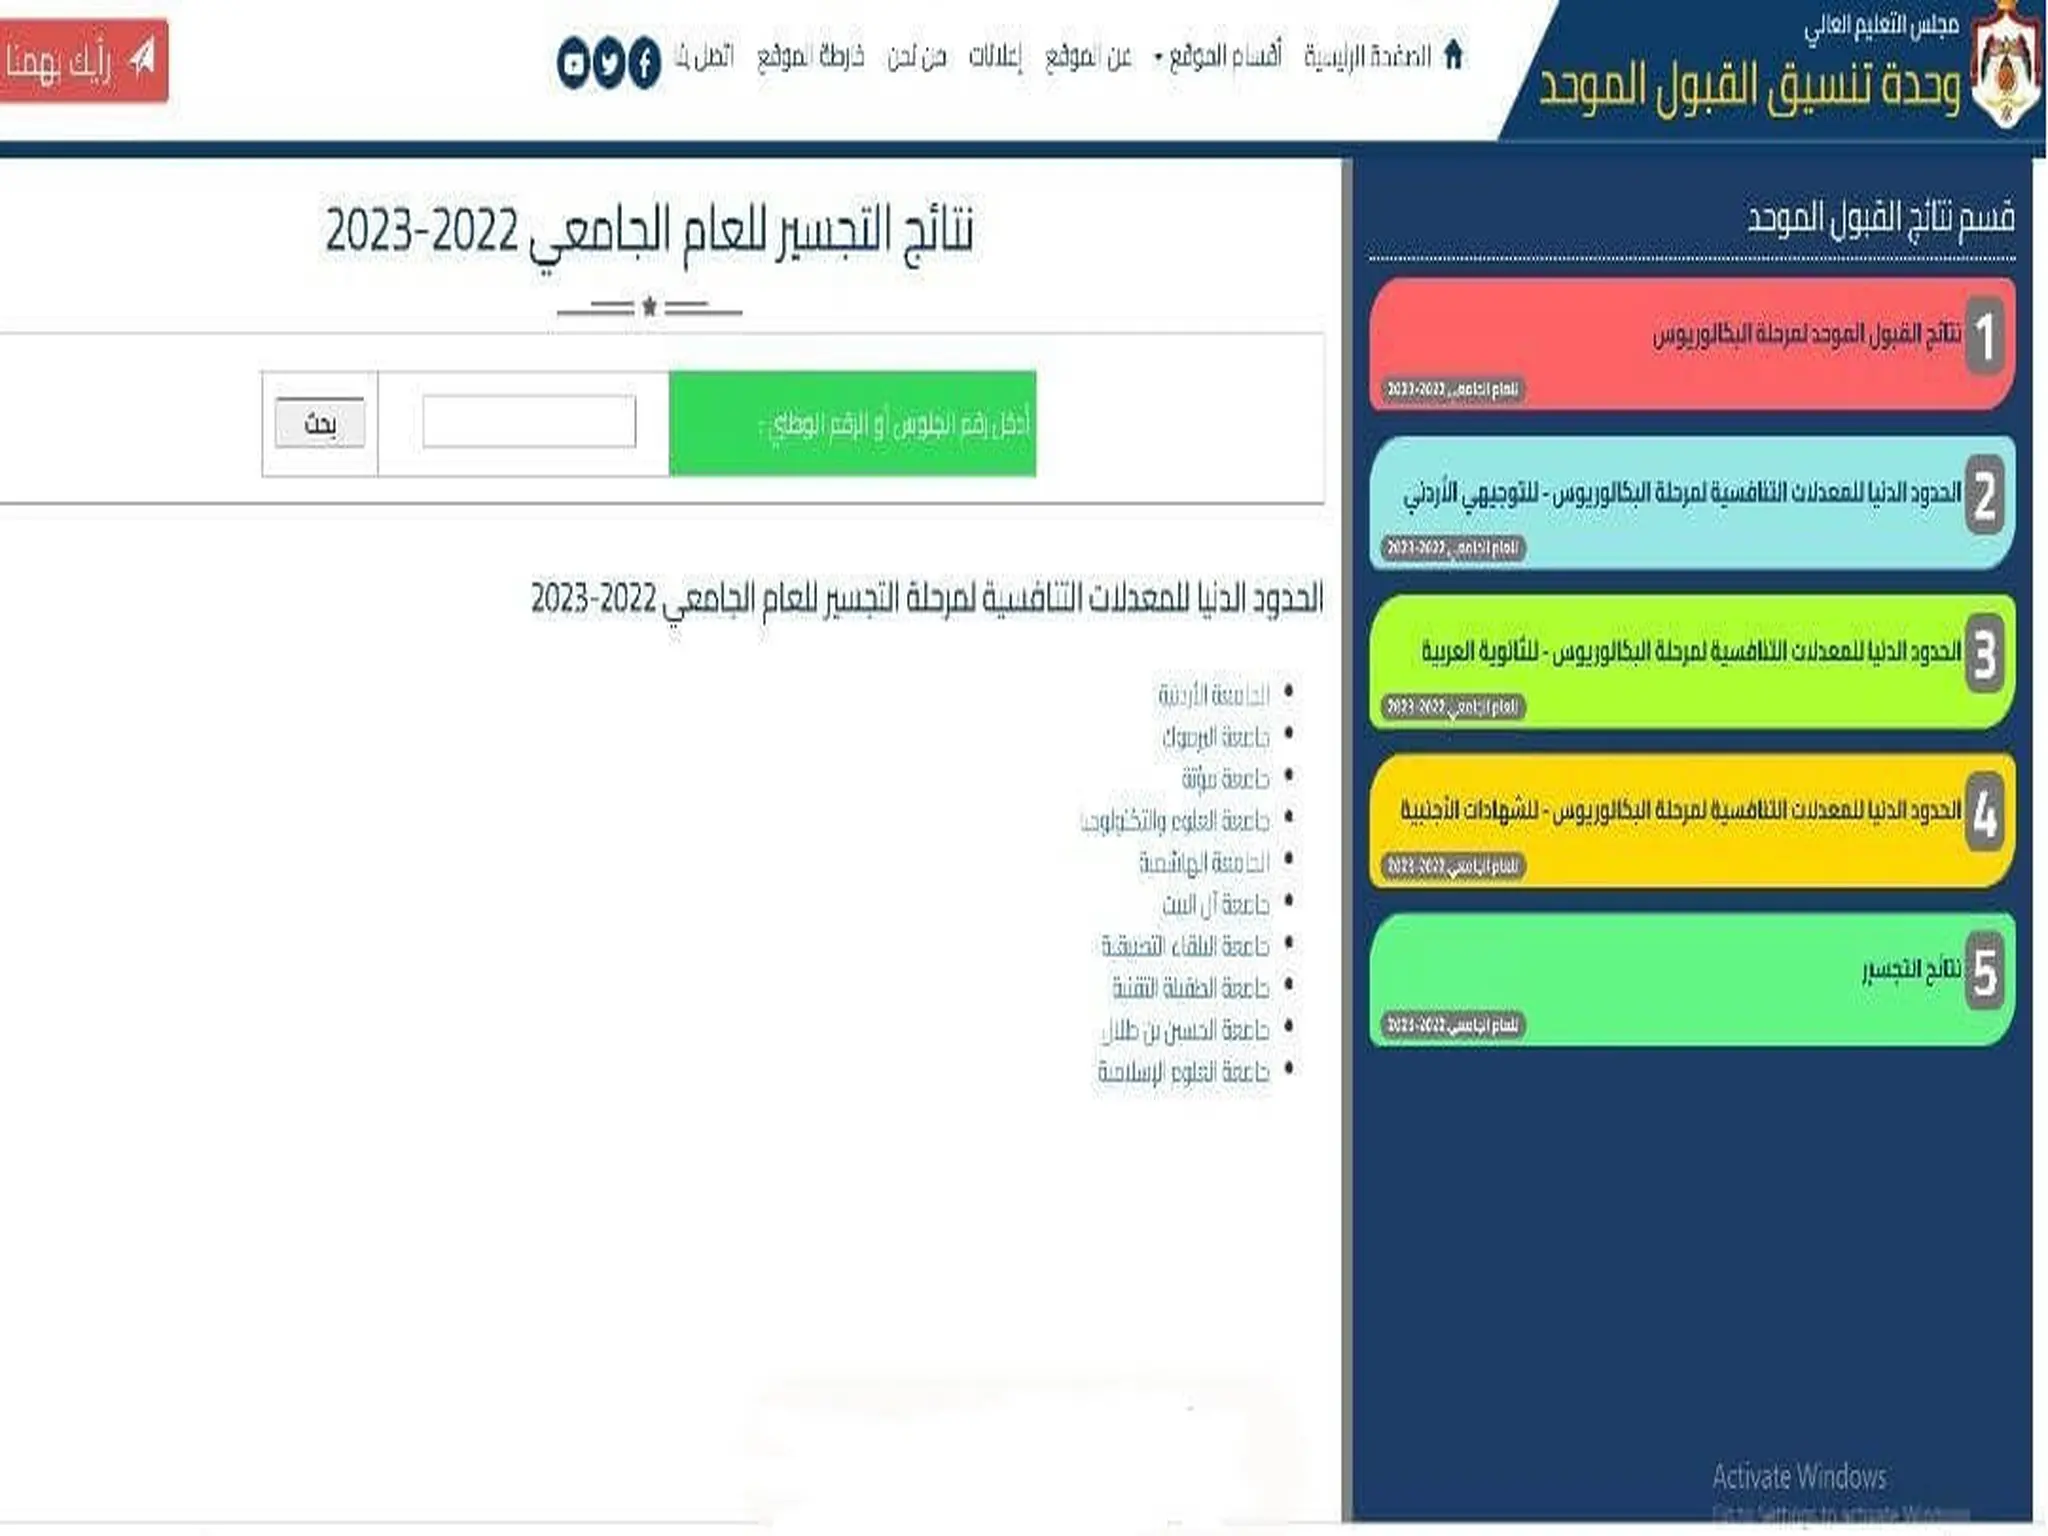 نتائج التجسير 2022-2023 في الأردن